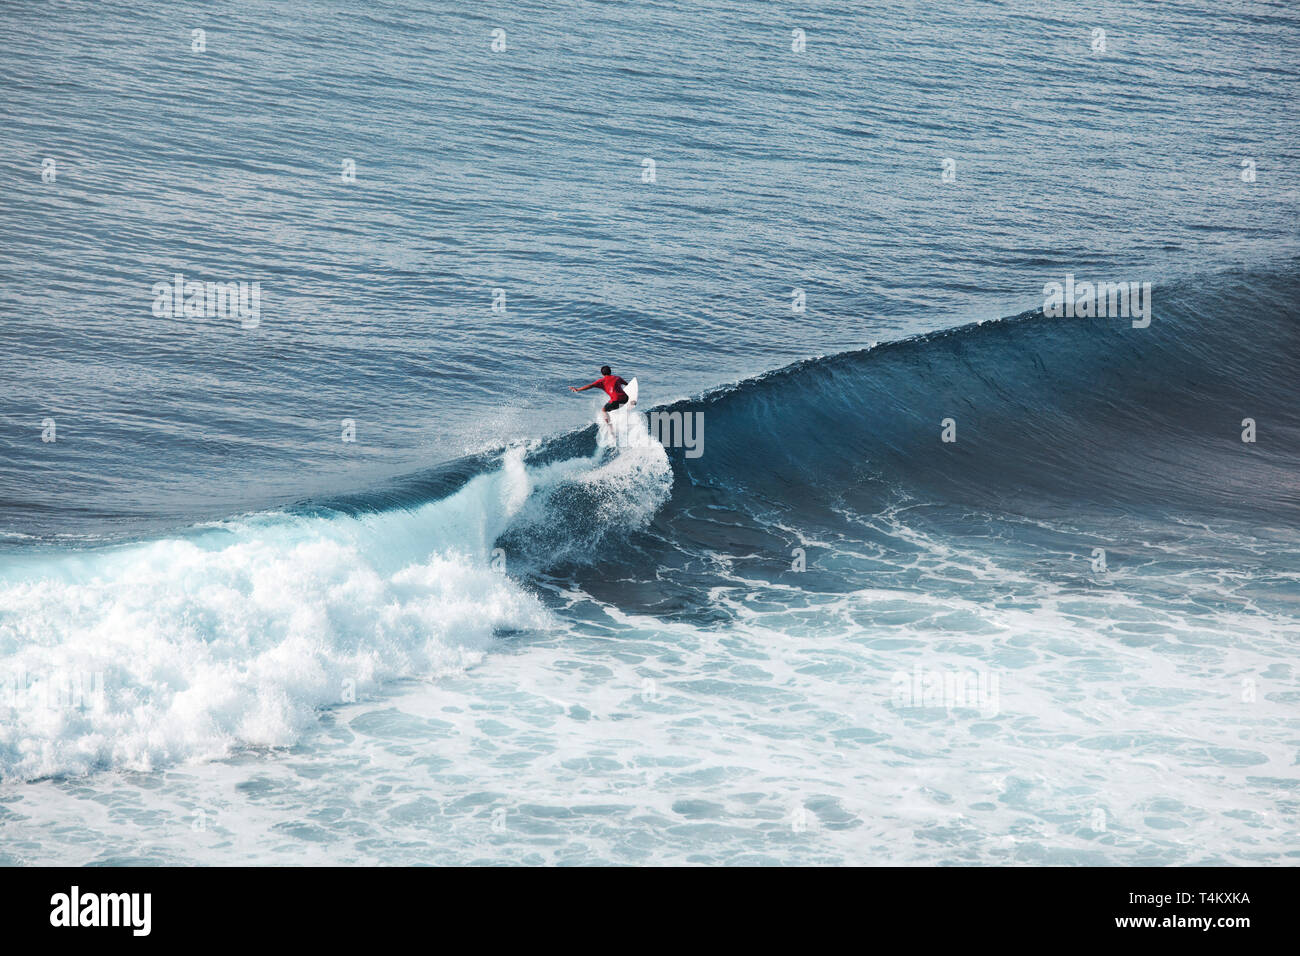 Im Ozean auf große Wellen Surfer. Bali surfen Luftaufnahme. Wassersport. Gesunden, aktiven Lebensstil. Surfen. Sommer Urlaub. Extreme Sport. Stockfoto